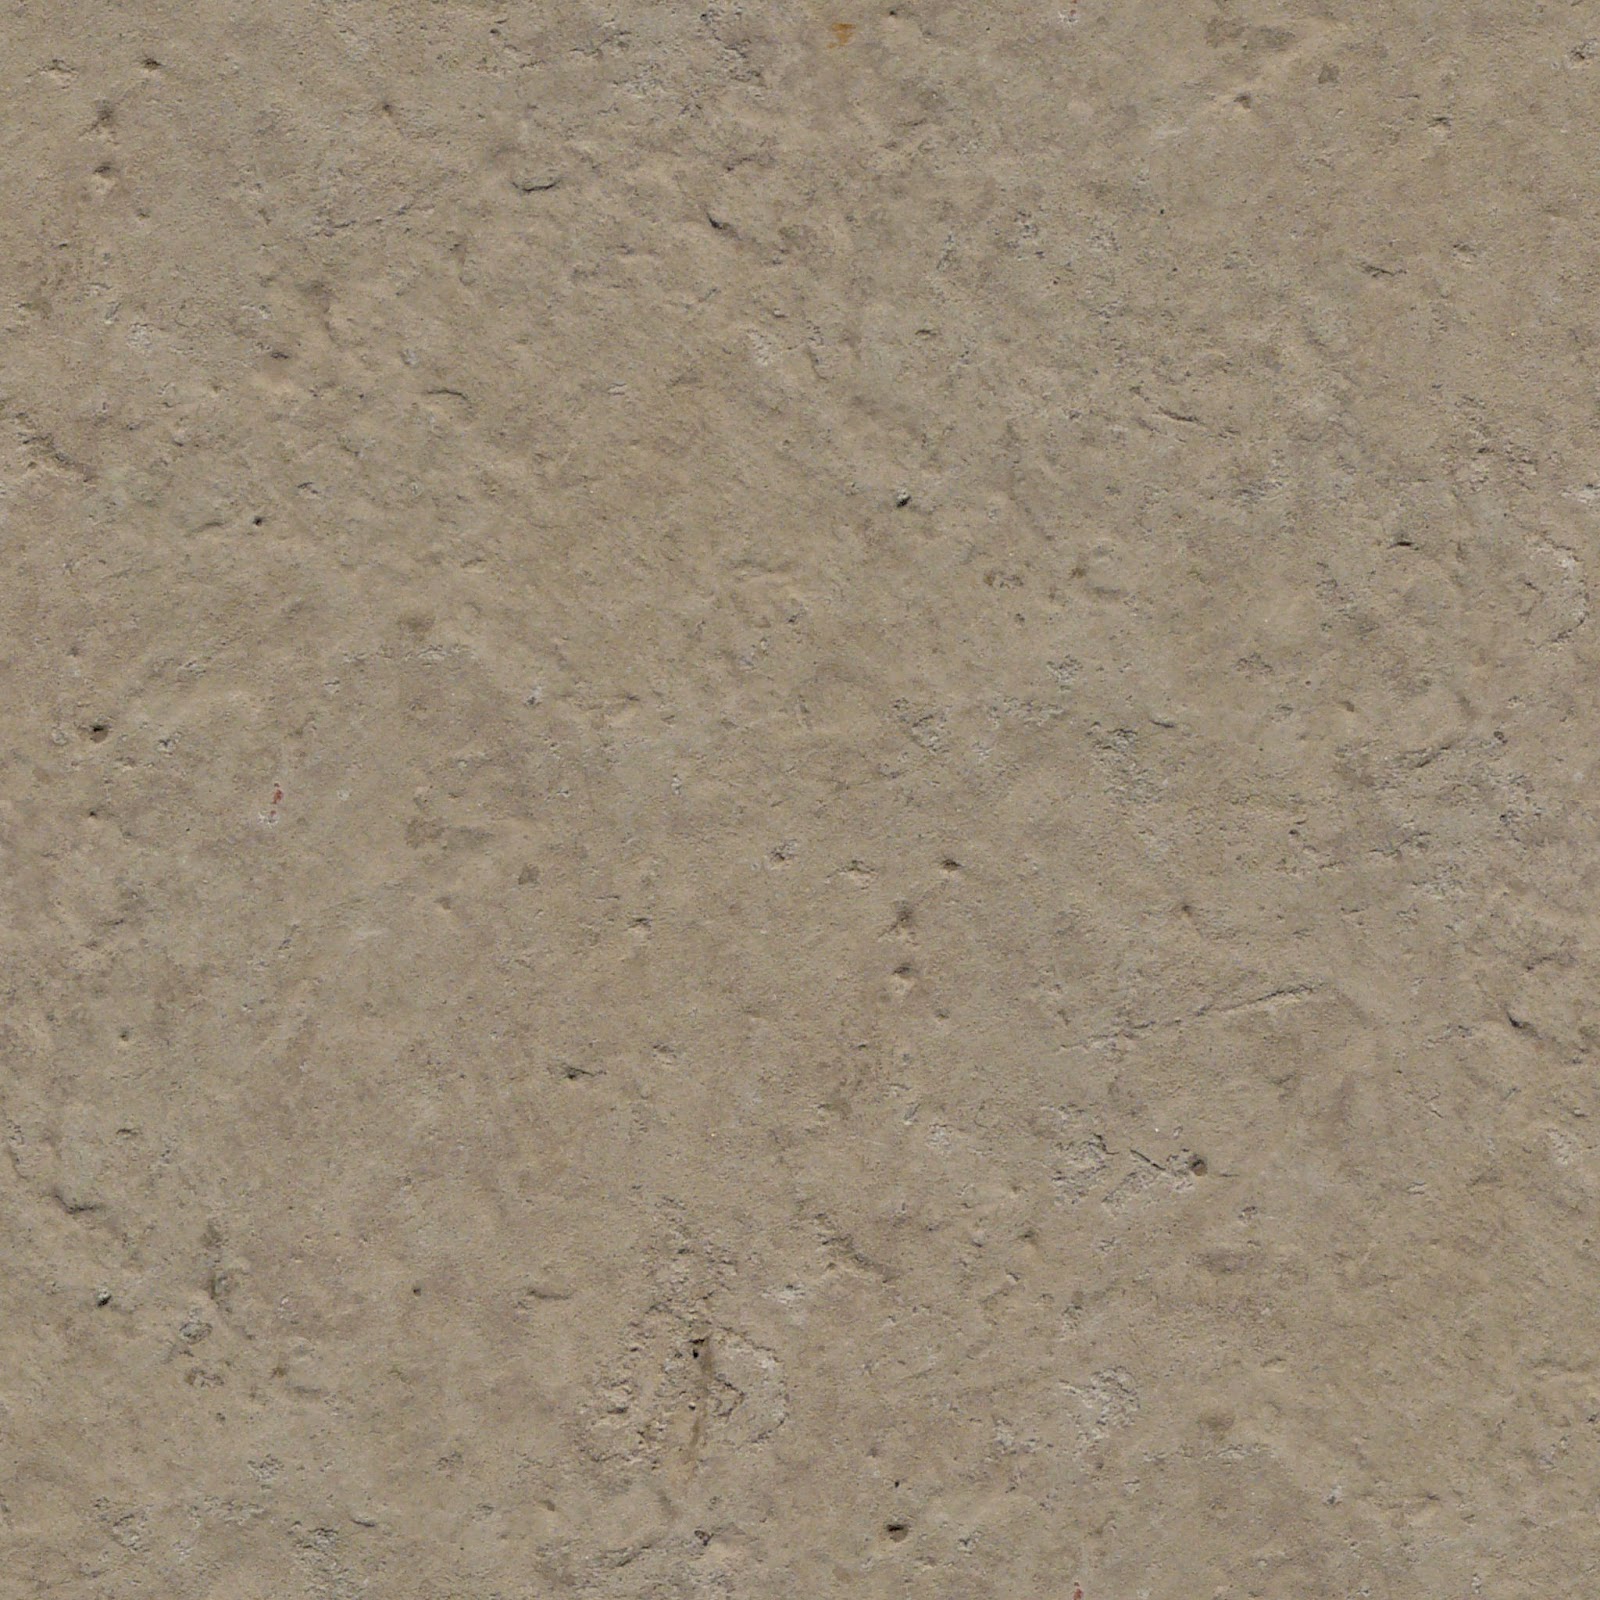 Color concrete texture seamless - rbatmanX